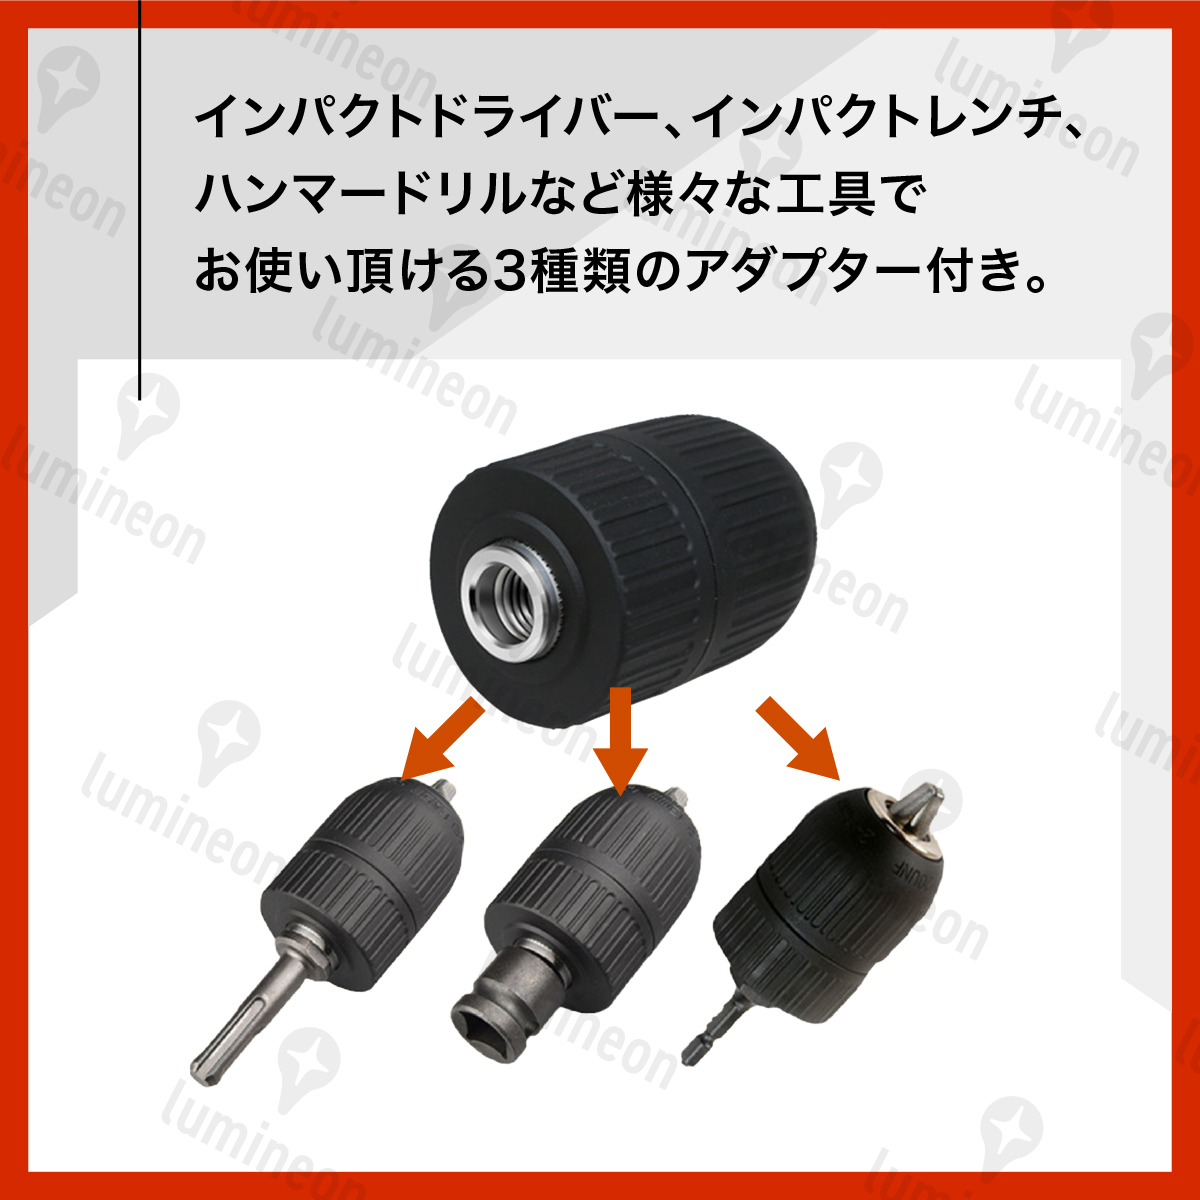 ドリル チャック キーレス 2〜13mm 3種変換アダプタ セット 六角軸 SDS軸 1/2 インパクトドライバー アダプター 電動ドライバー g194b 2の画像3